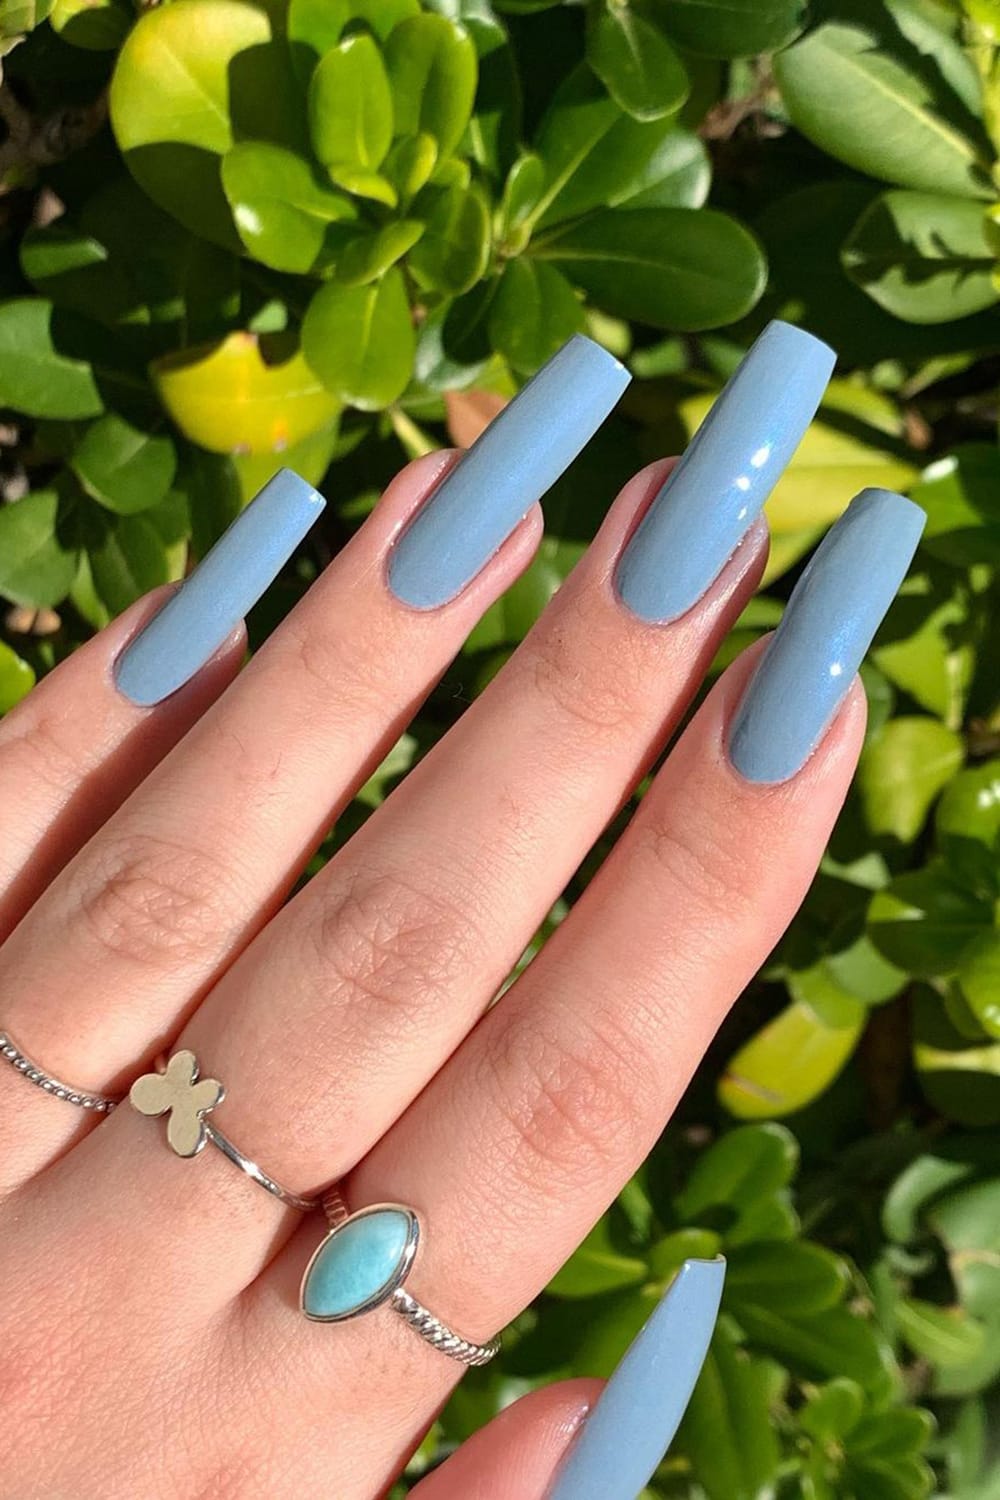 Blue-grey nails